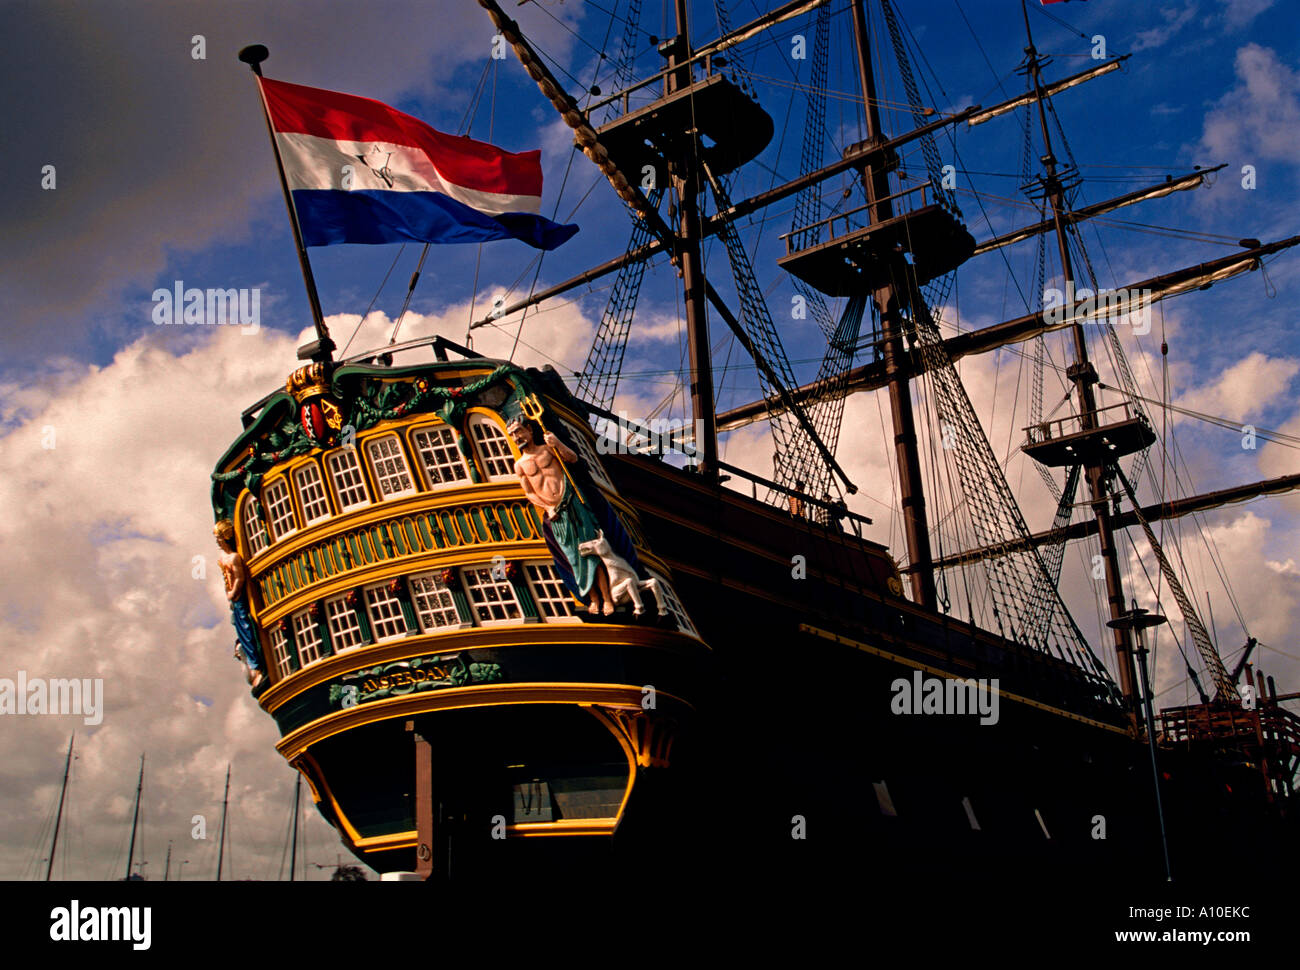 El Amsterdam, de tres mástiles, buque Clipper Ship, réplica, Dutch East India Company barco, el museo marítimo, Amsterdam, Holanda, Países Bajos, Europa Foto de stock